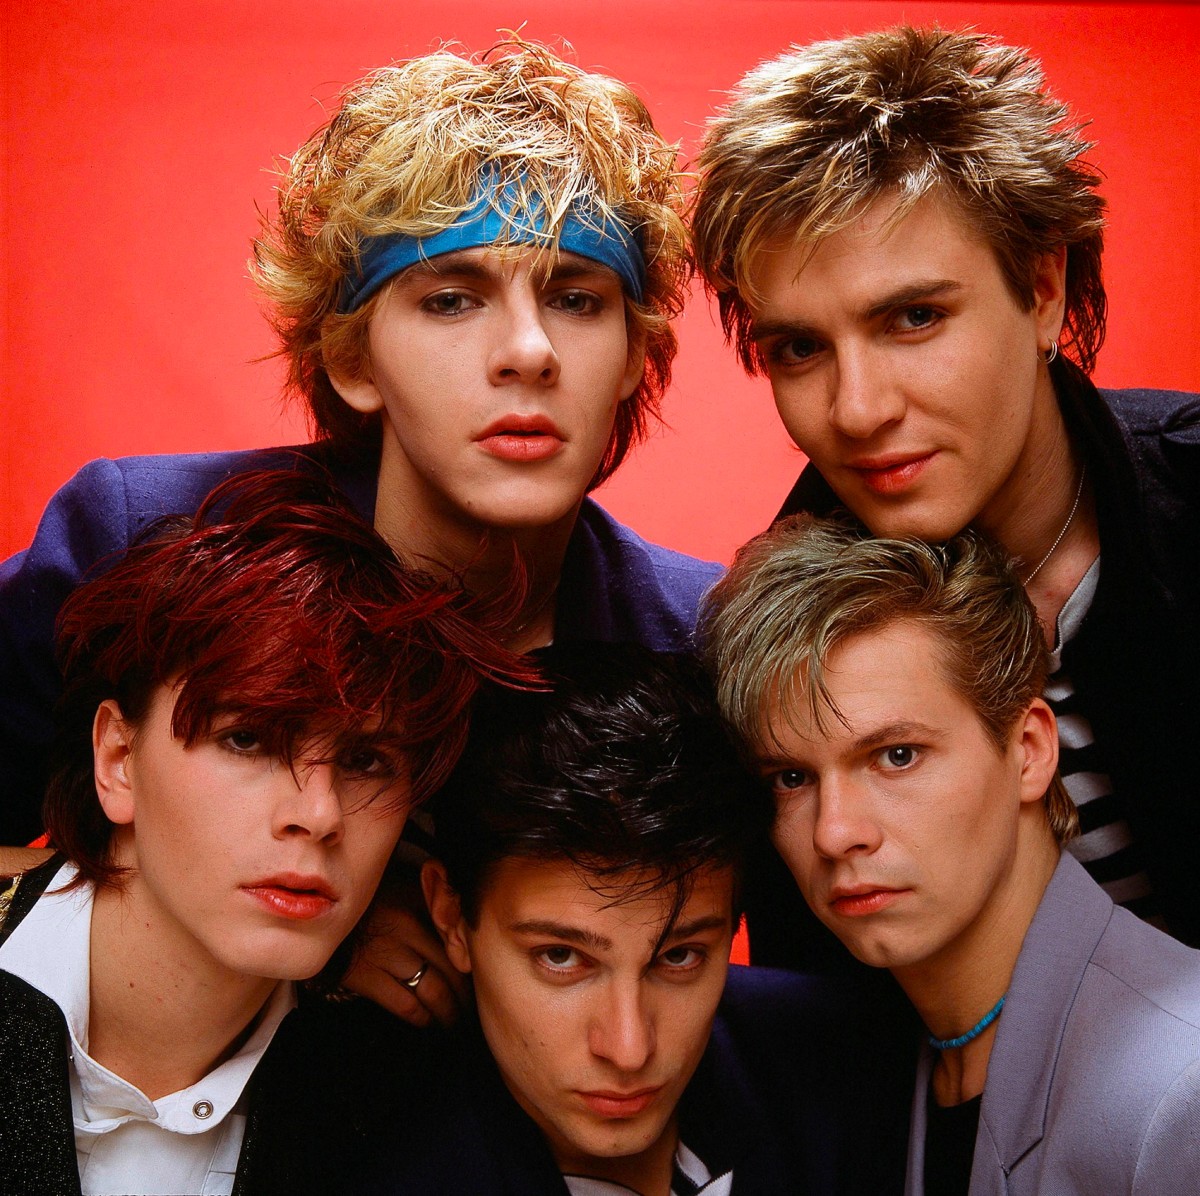 Duran Duran ("Duran Duran")